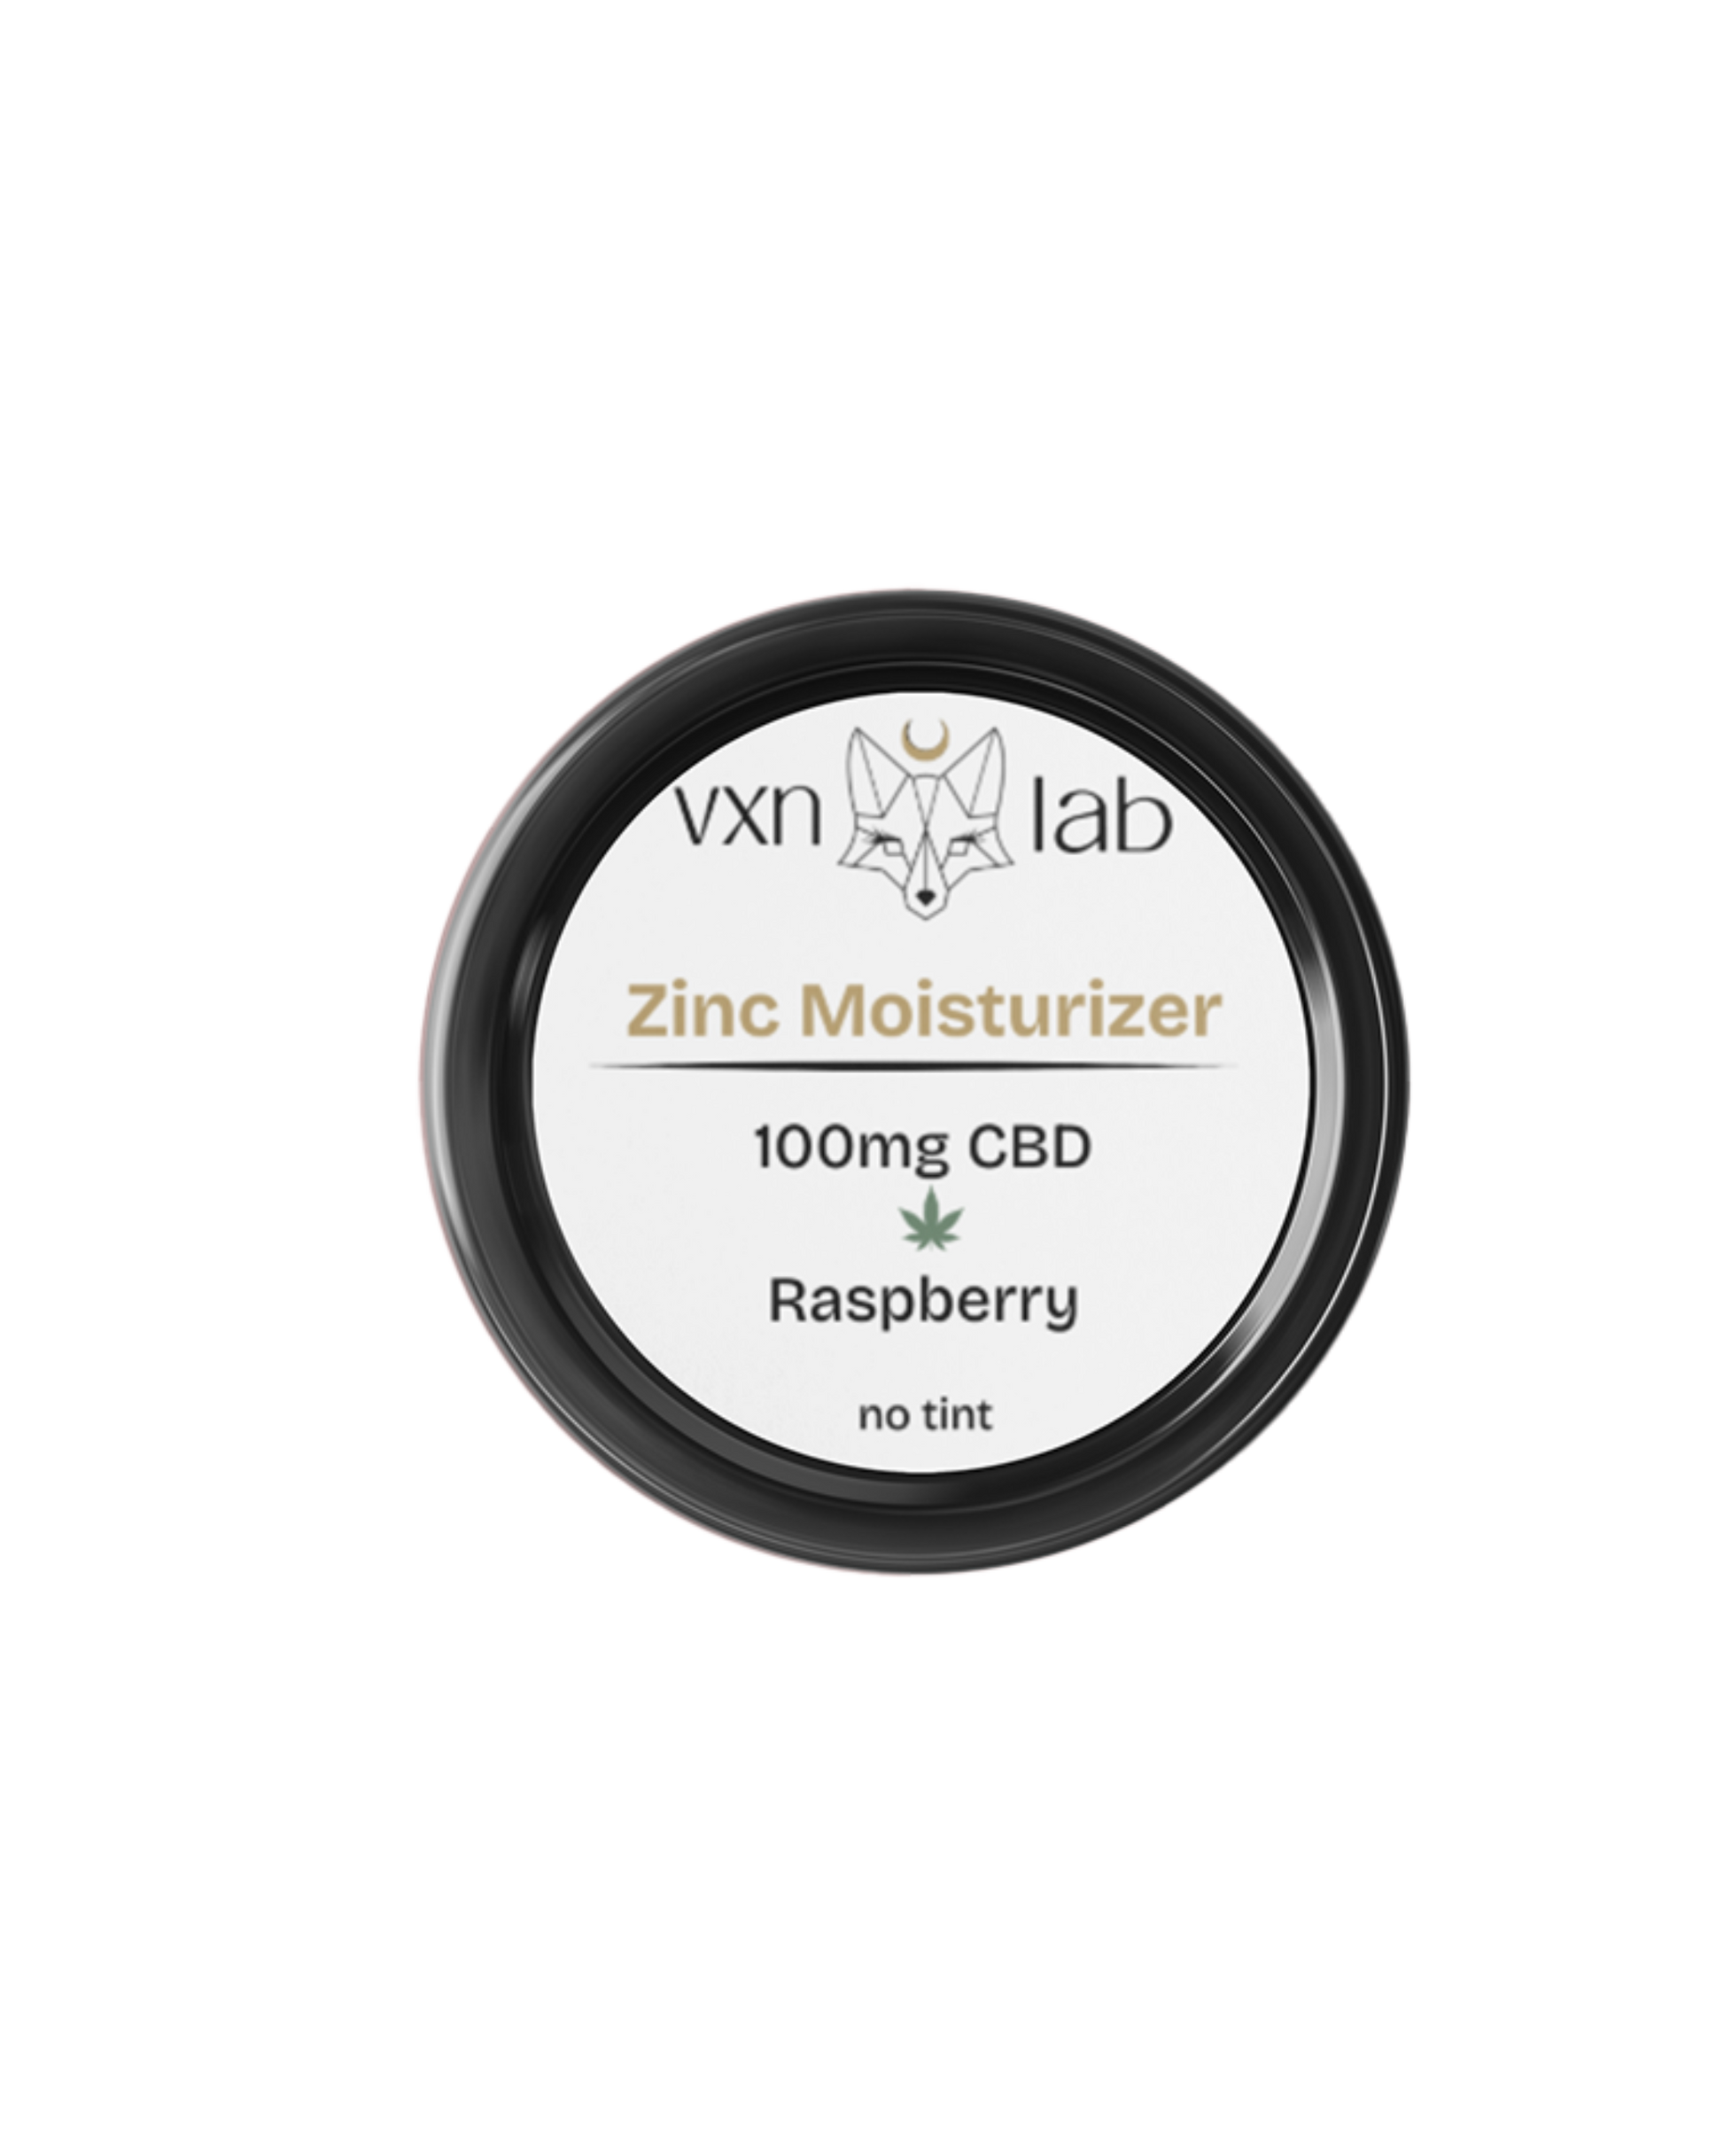 Zinc + Raspberry Moisturizer - No Tint - VXN Wellness